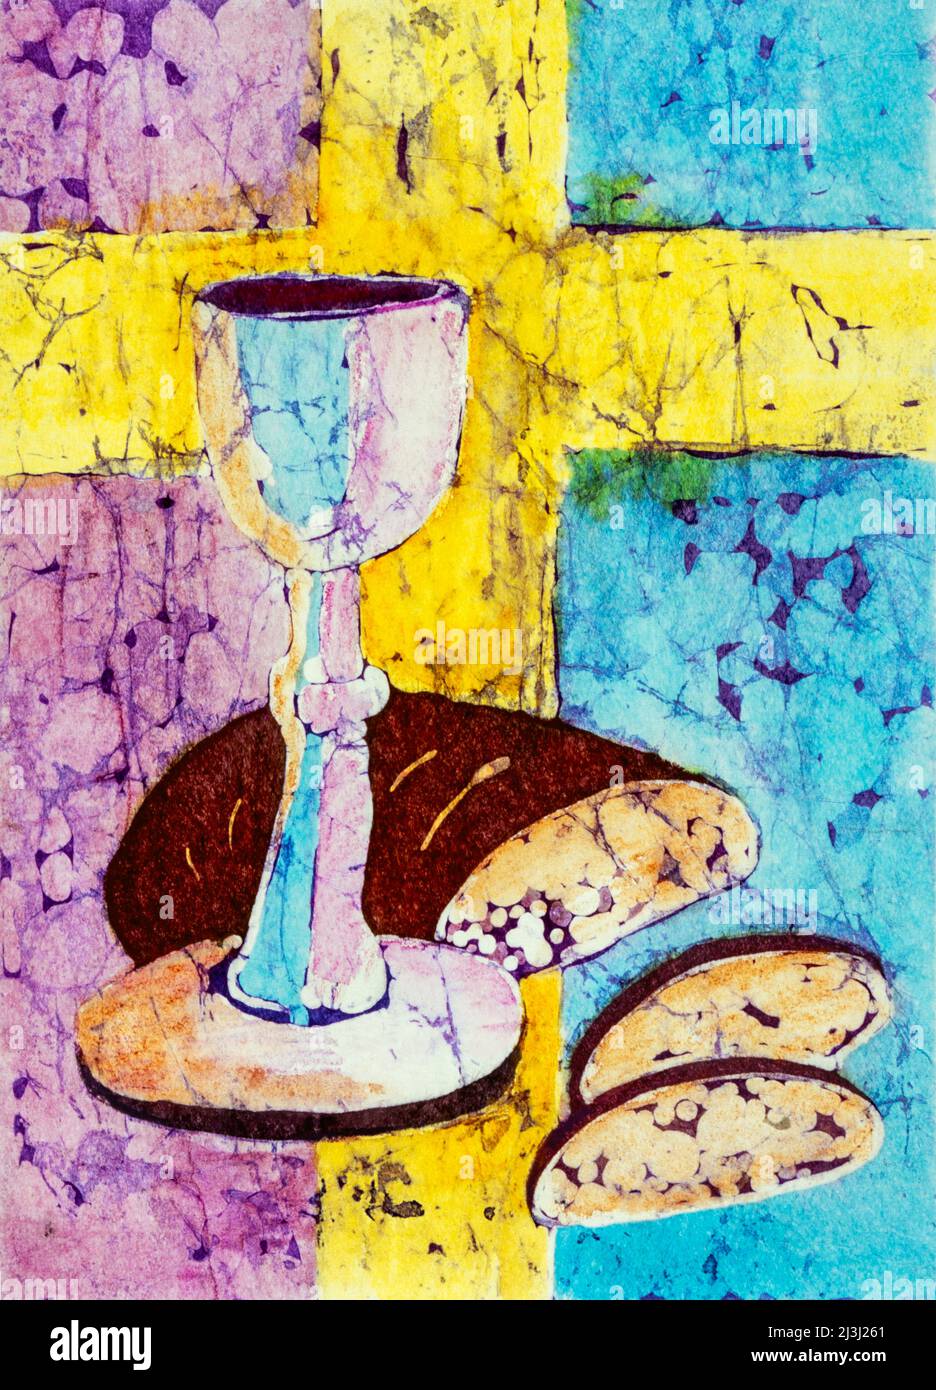 Aquarelle de Batika sur papier japonais par Regine Martin vin et pain, croix jaune vif, image symbole pour la Cène du Seigneur, célébration eucharistique, Saint sacrement, Banque D'Images